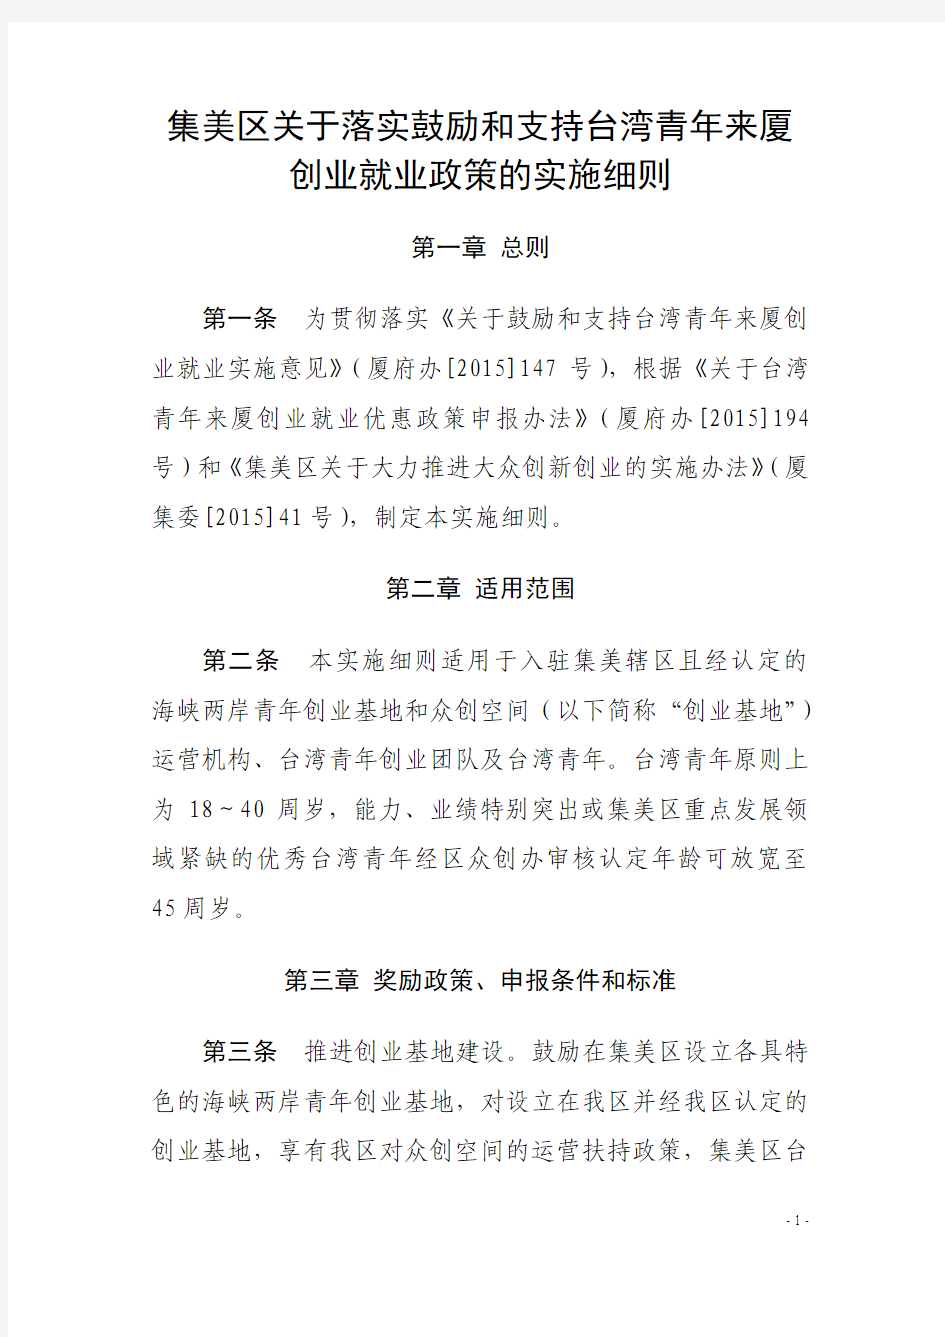 《集美区关于落实鼓励和支持台湾青年来厦创业就业政策的实施细则》